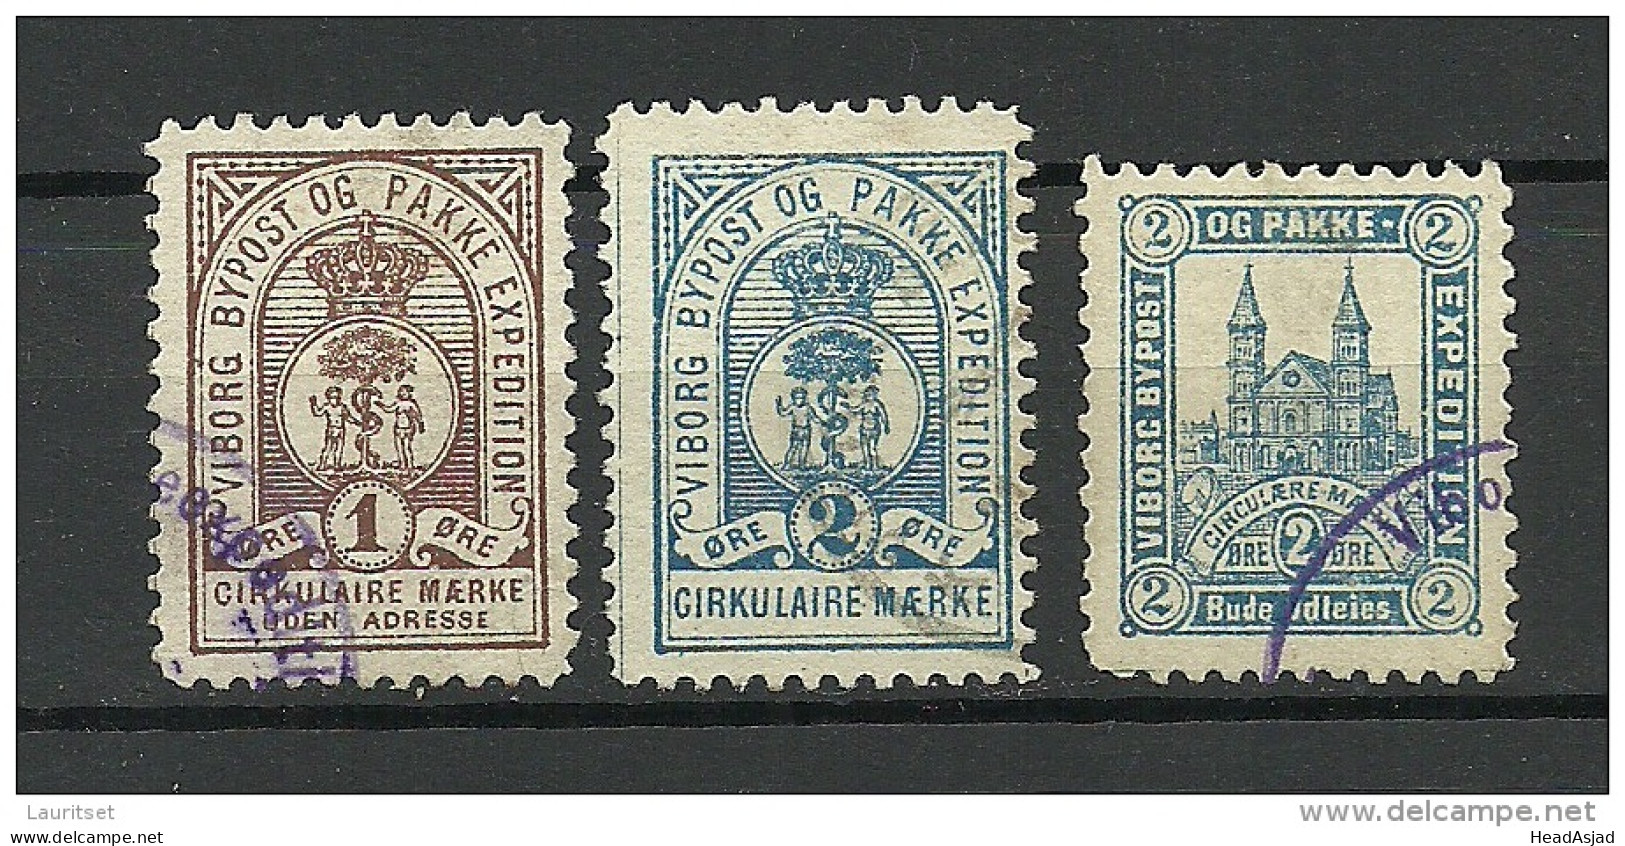 DENMARK D√§nemark Danmark VIBORG Lokalpost Local City Post O - Local Post Stamps